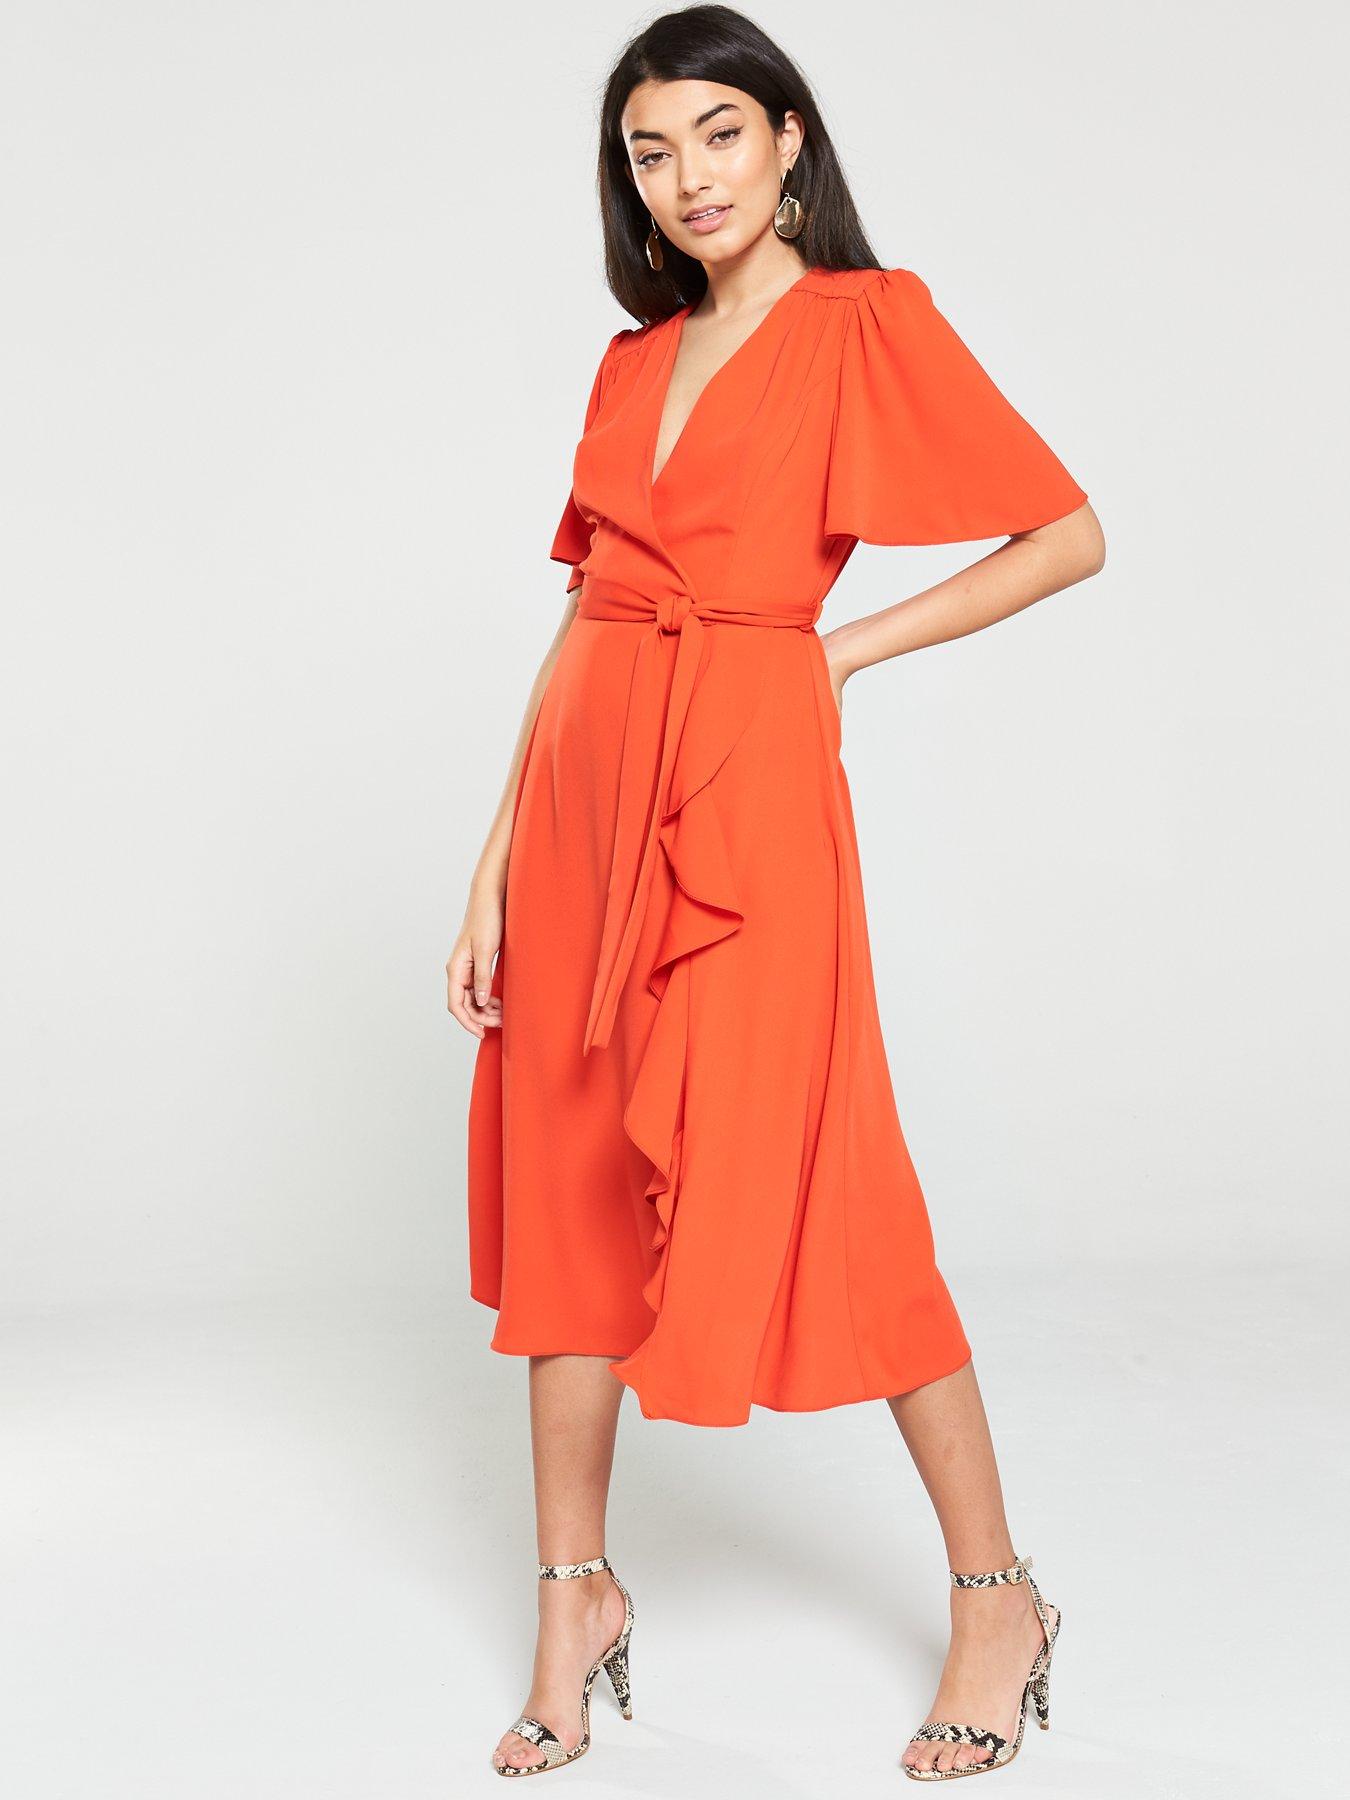 orange dress uk